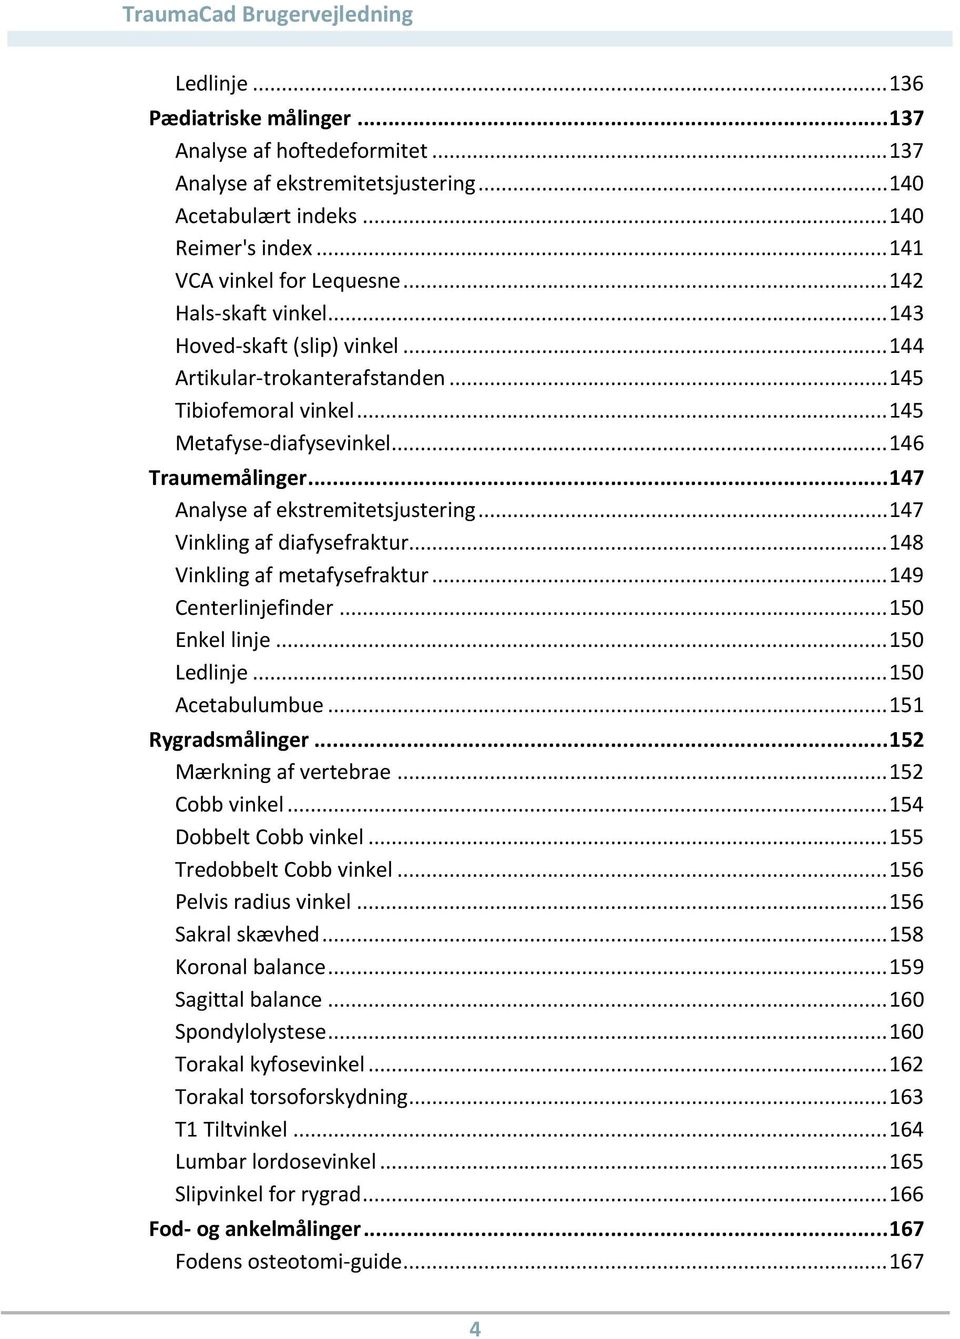 .. 146 Traumemålinger... 147 Analyse af ekstremitetsjustering... 147 Vinkling af diafysefraktur... 148 Vinkling af metafysefraktur... 149 Centerlinjefinder... 150 Enkel linje... 150 Ledlinje.